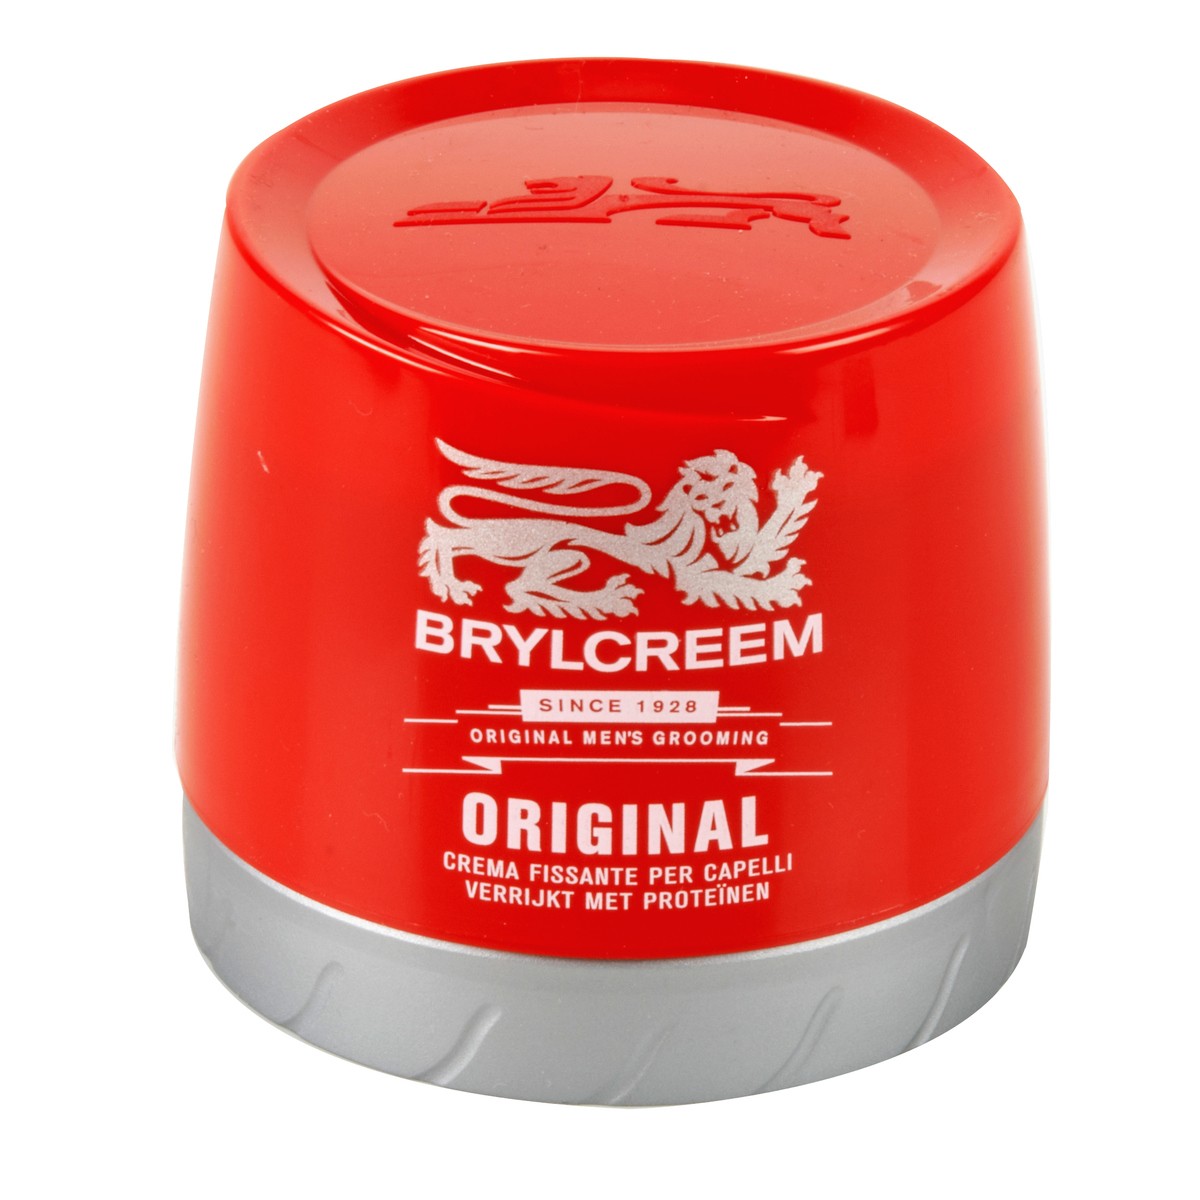 Brylcreem Crema fissante per capelli Original